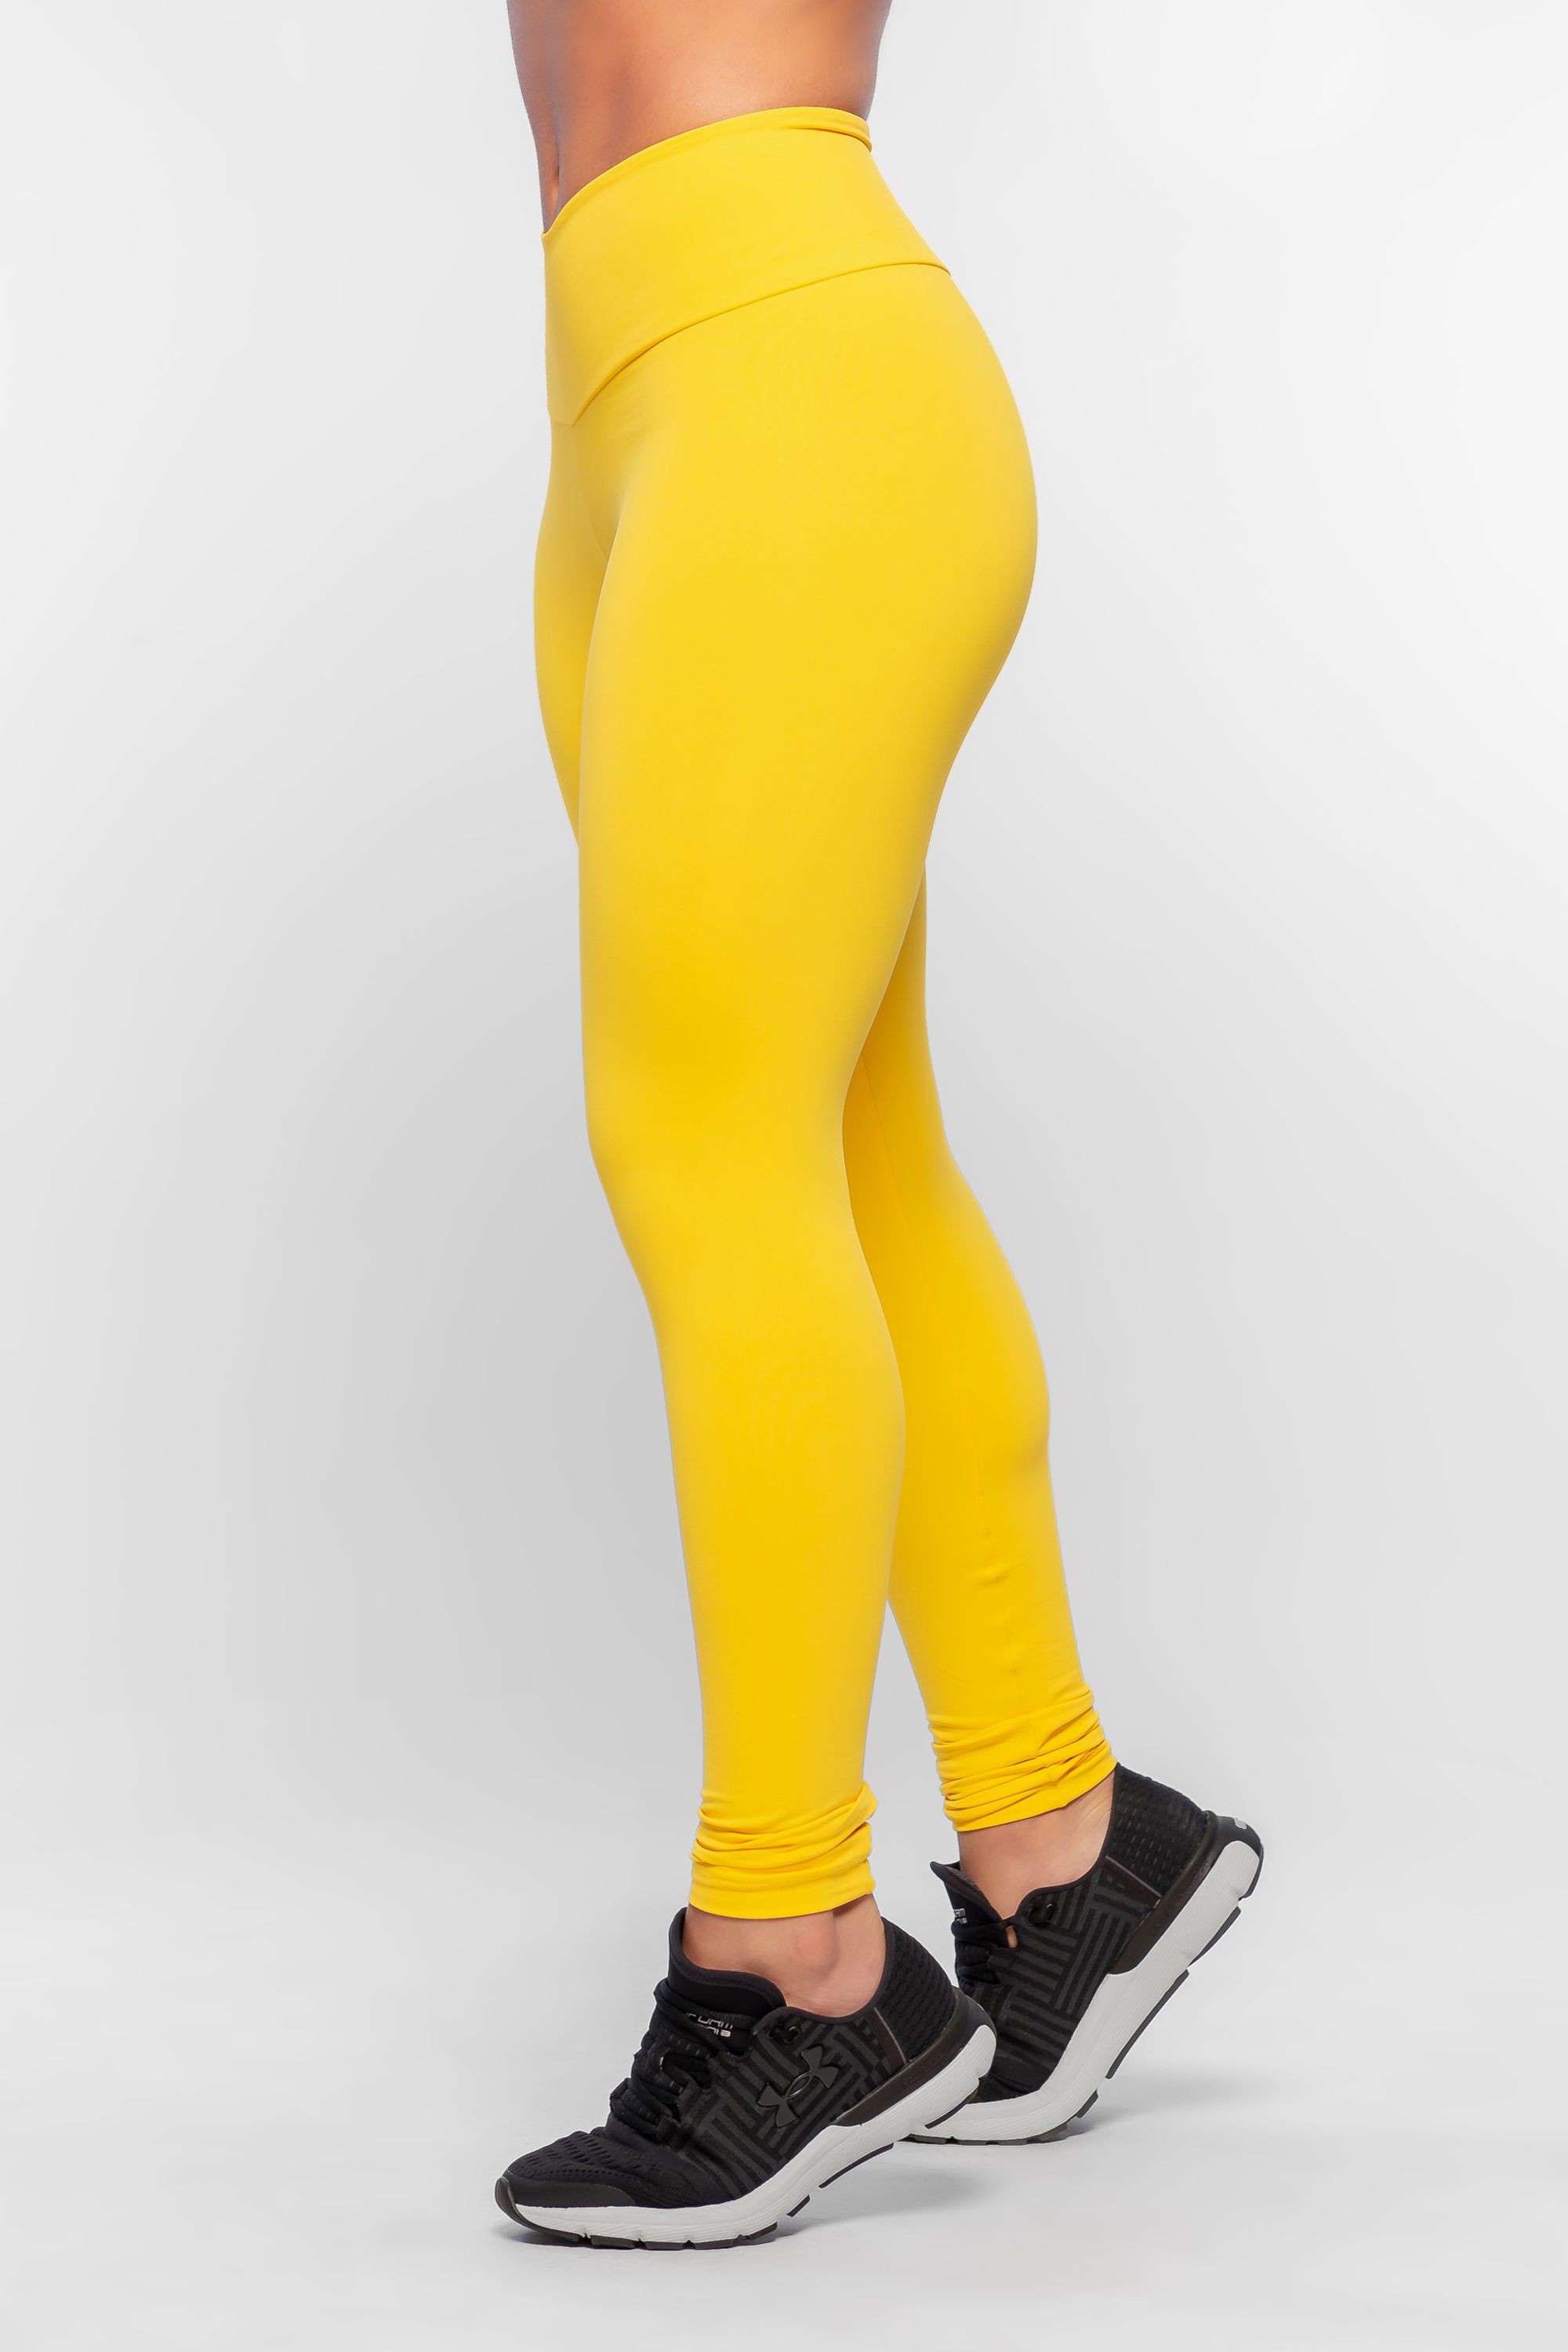 calça legging amarela